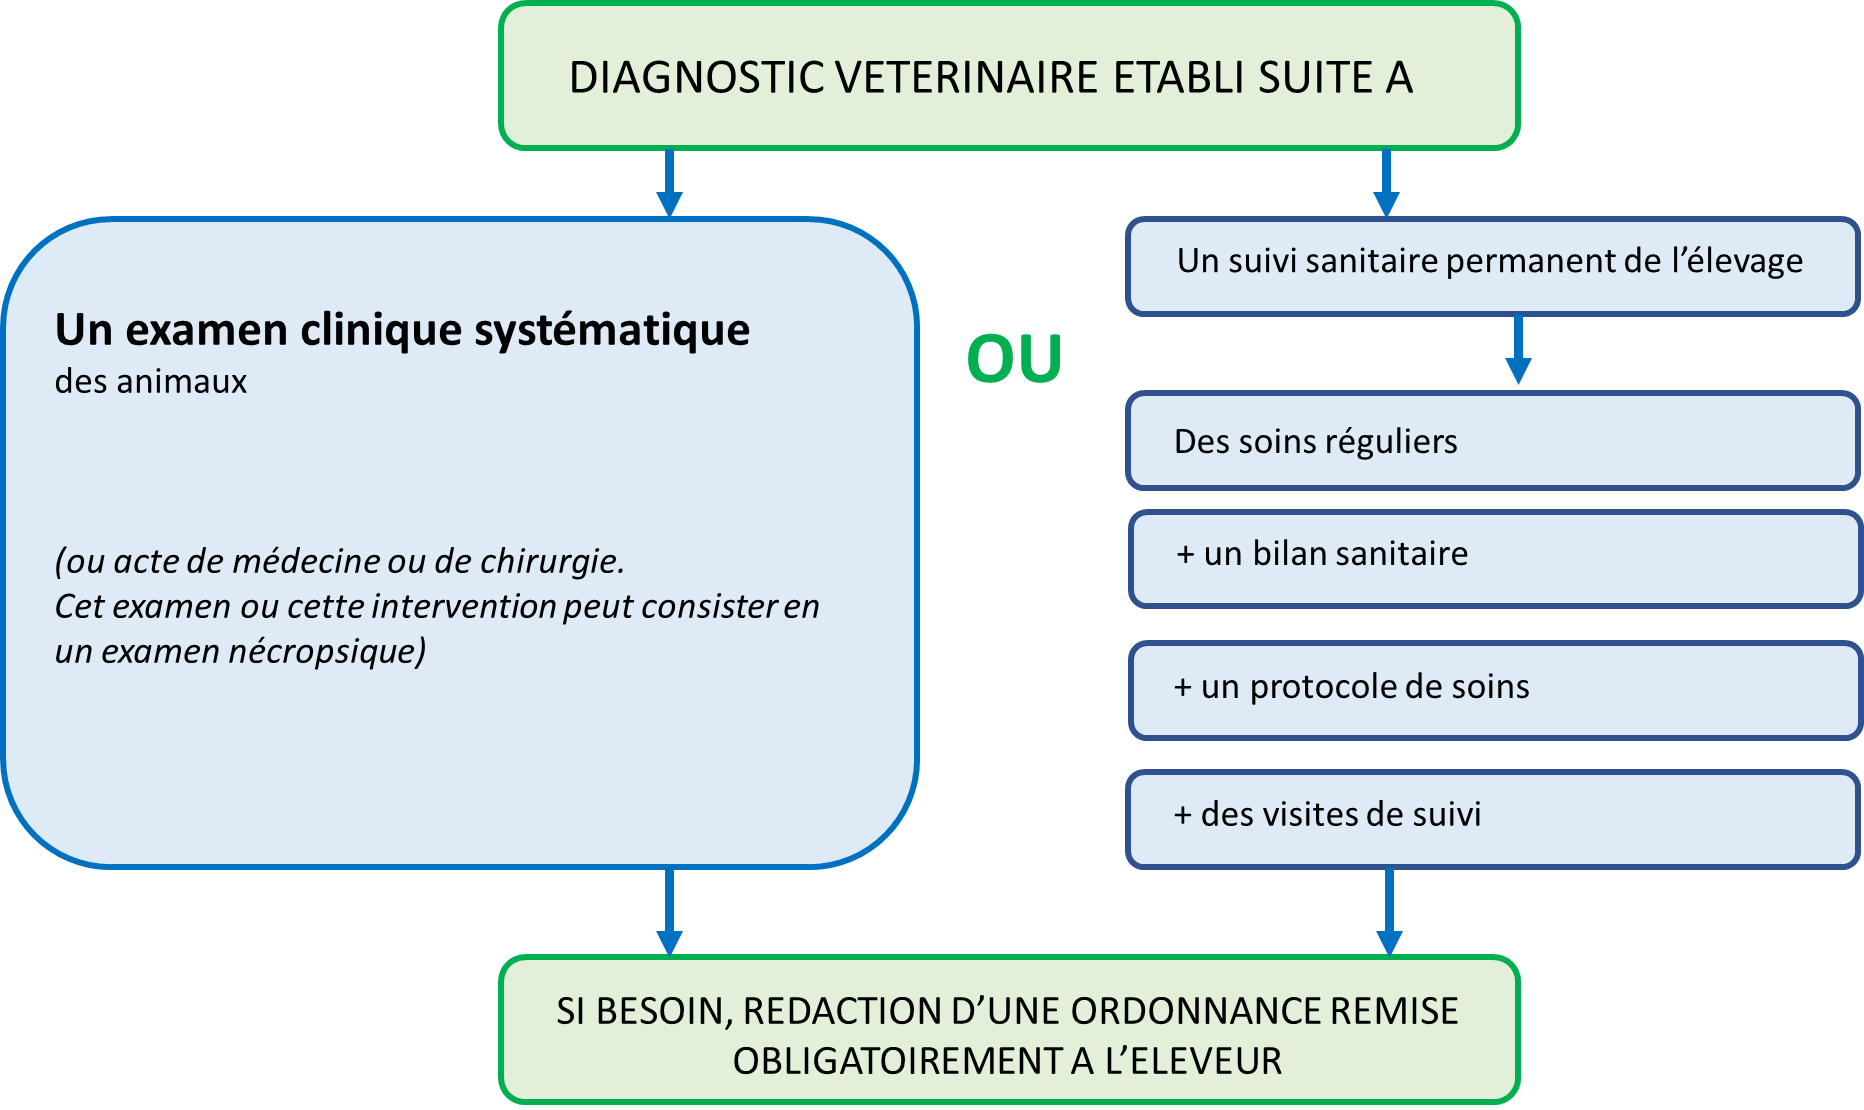 diagnstique-veterinaire-etabli-suiteA